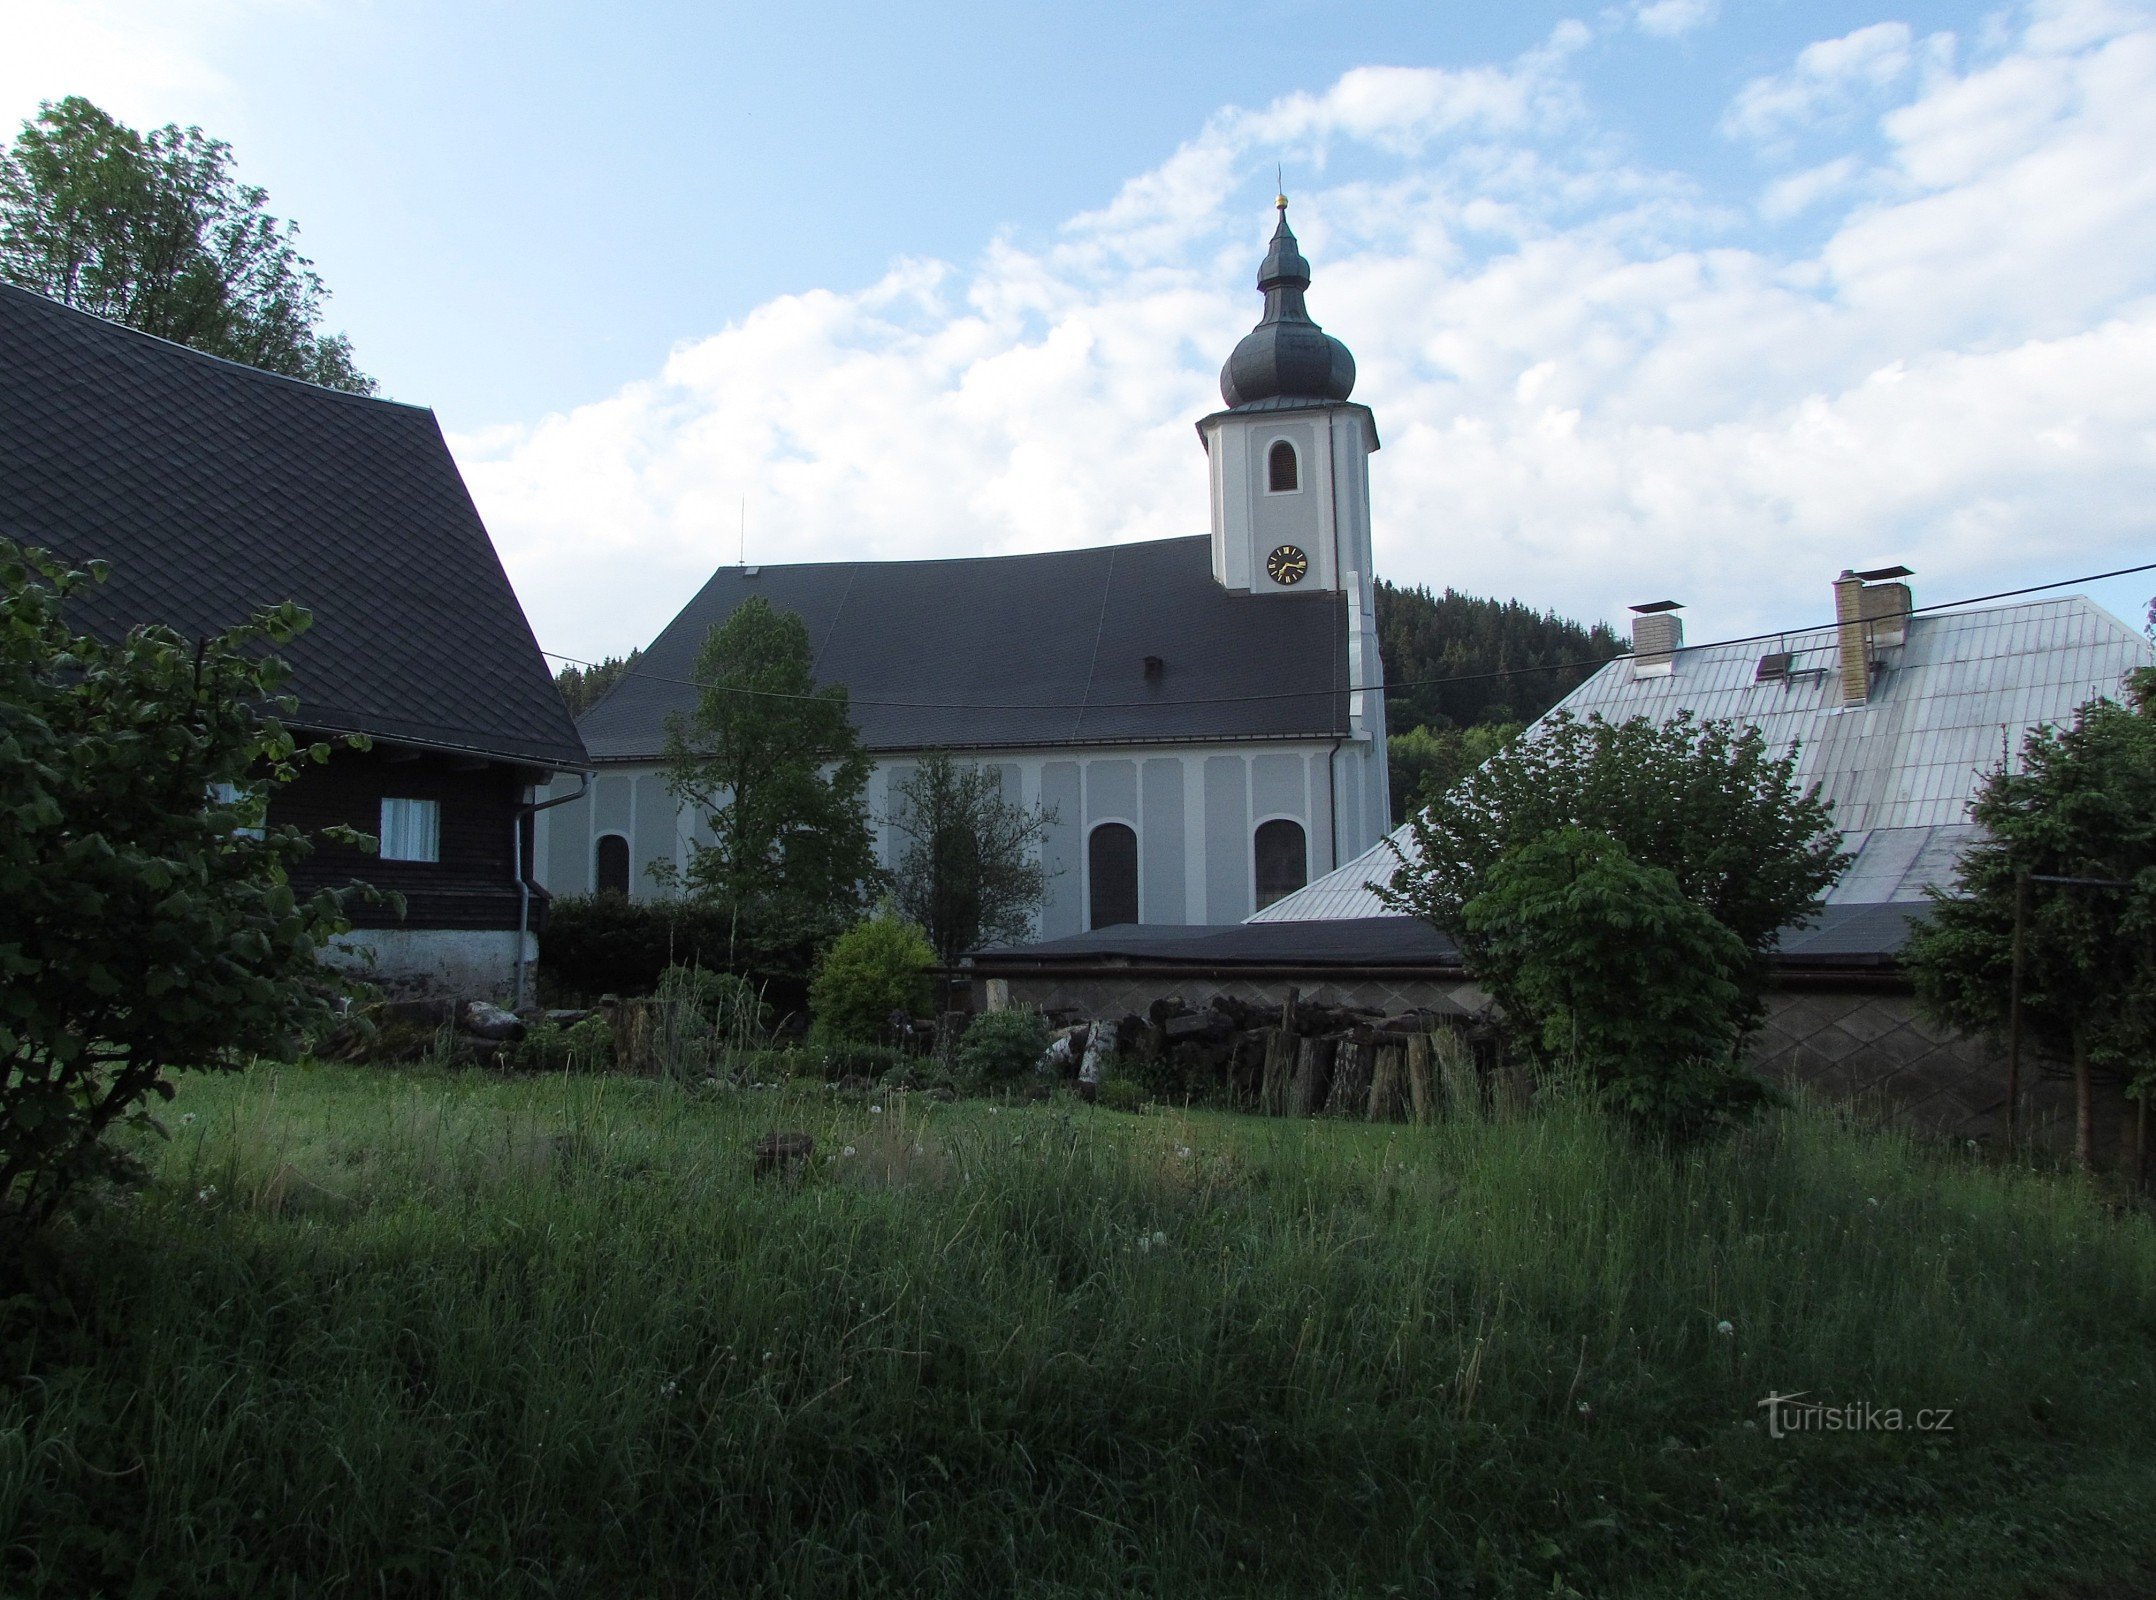 Heřmanovice - St. Andrews Kirke og andre hellige monumenter